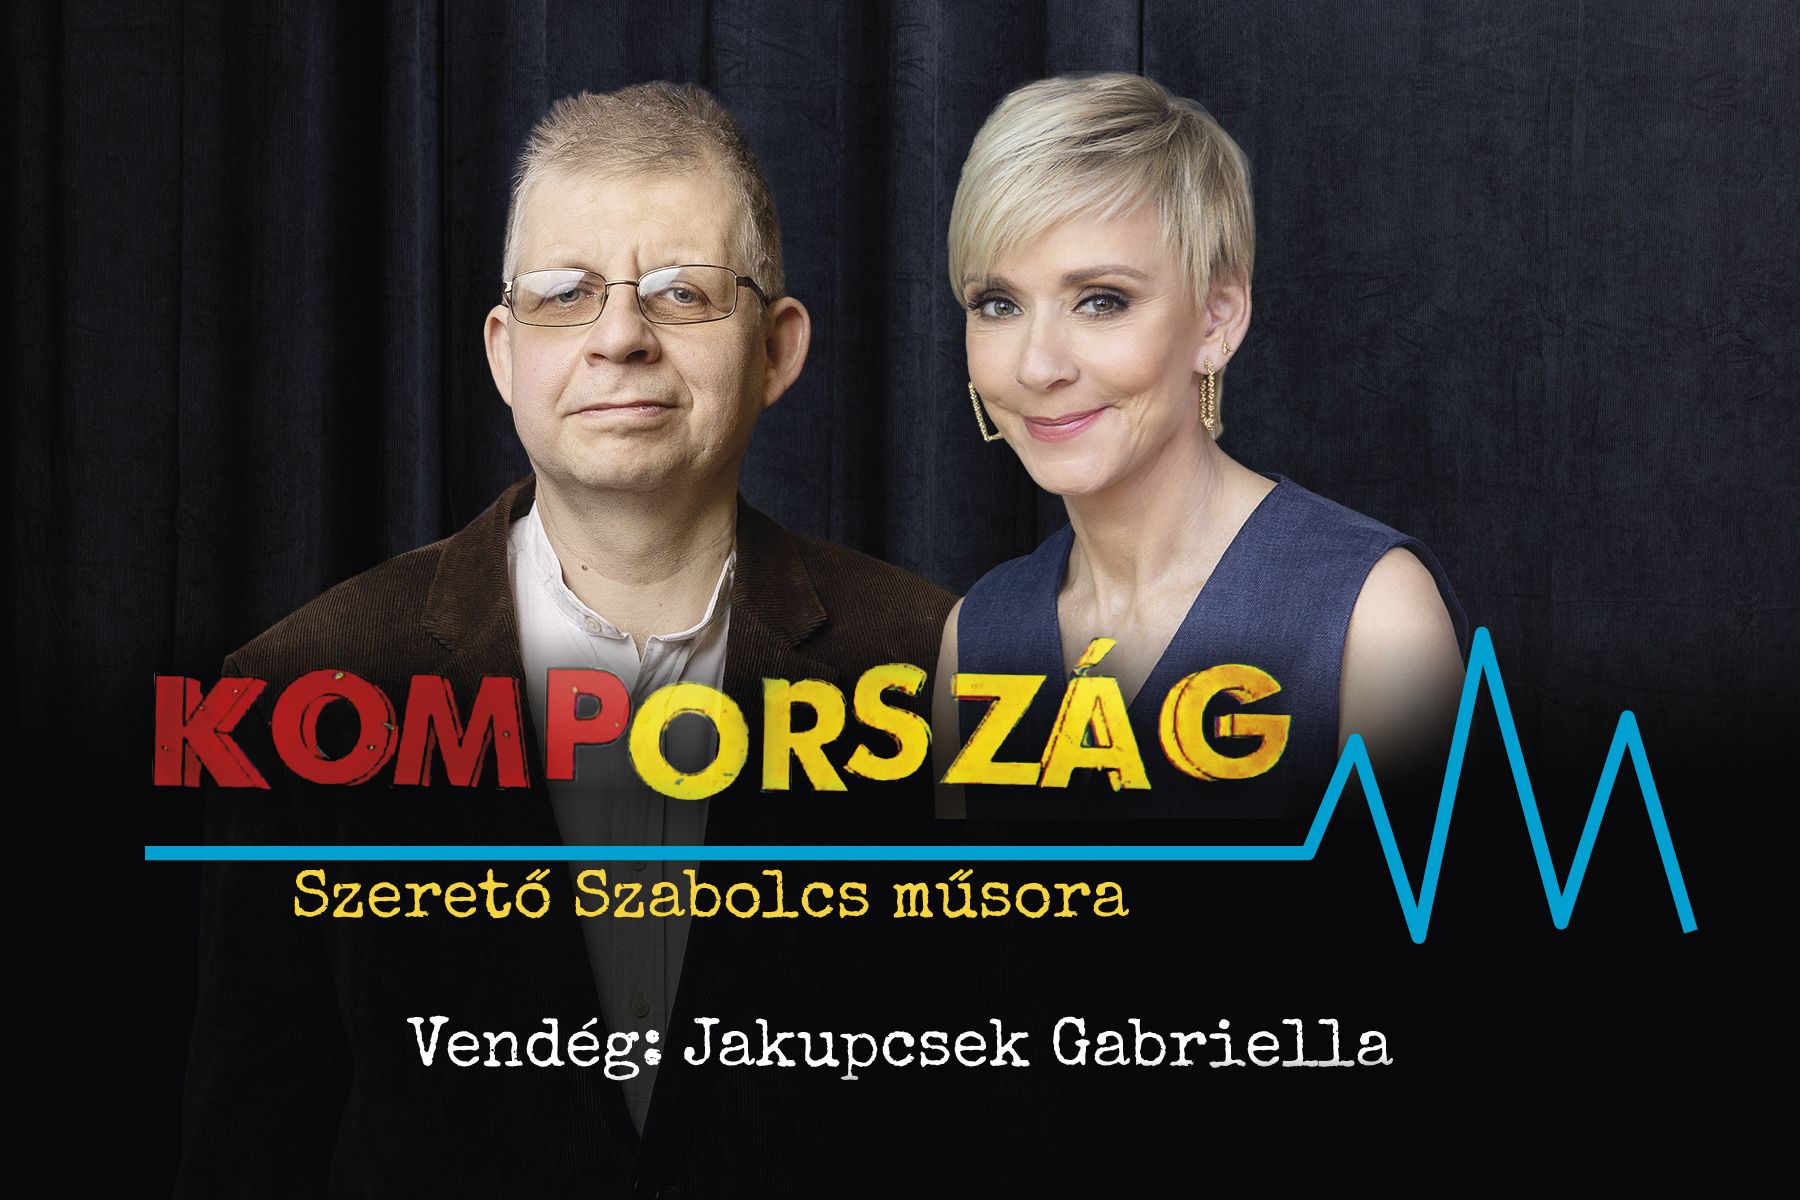 Jakupcsek Gabriella: Megriadtam a kormányszóvivői feladattól, a politikából nincs visszaút – Kompország